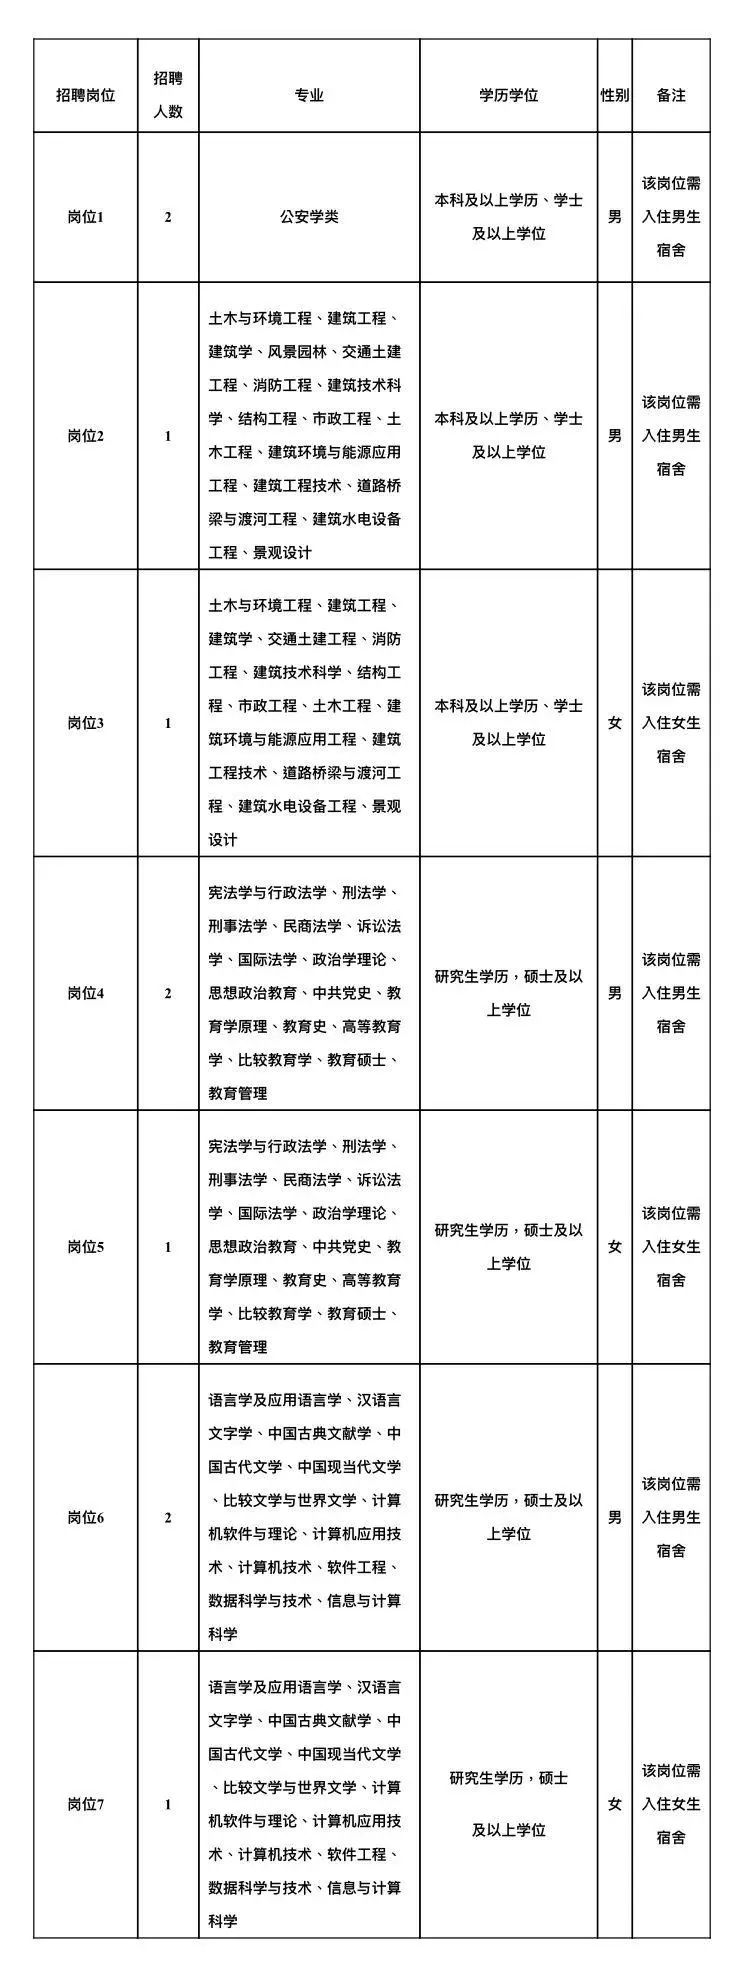 福建省事业单位招聘（最新）-龙华富士康内部推荐